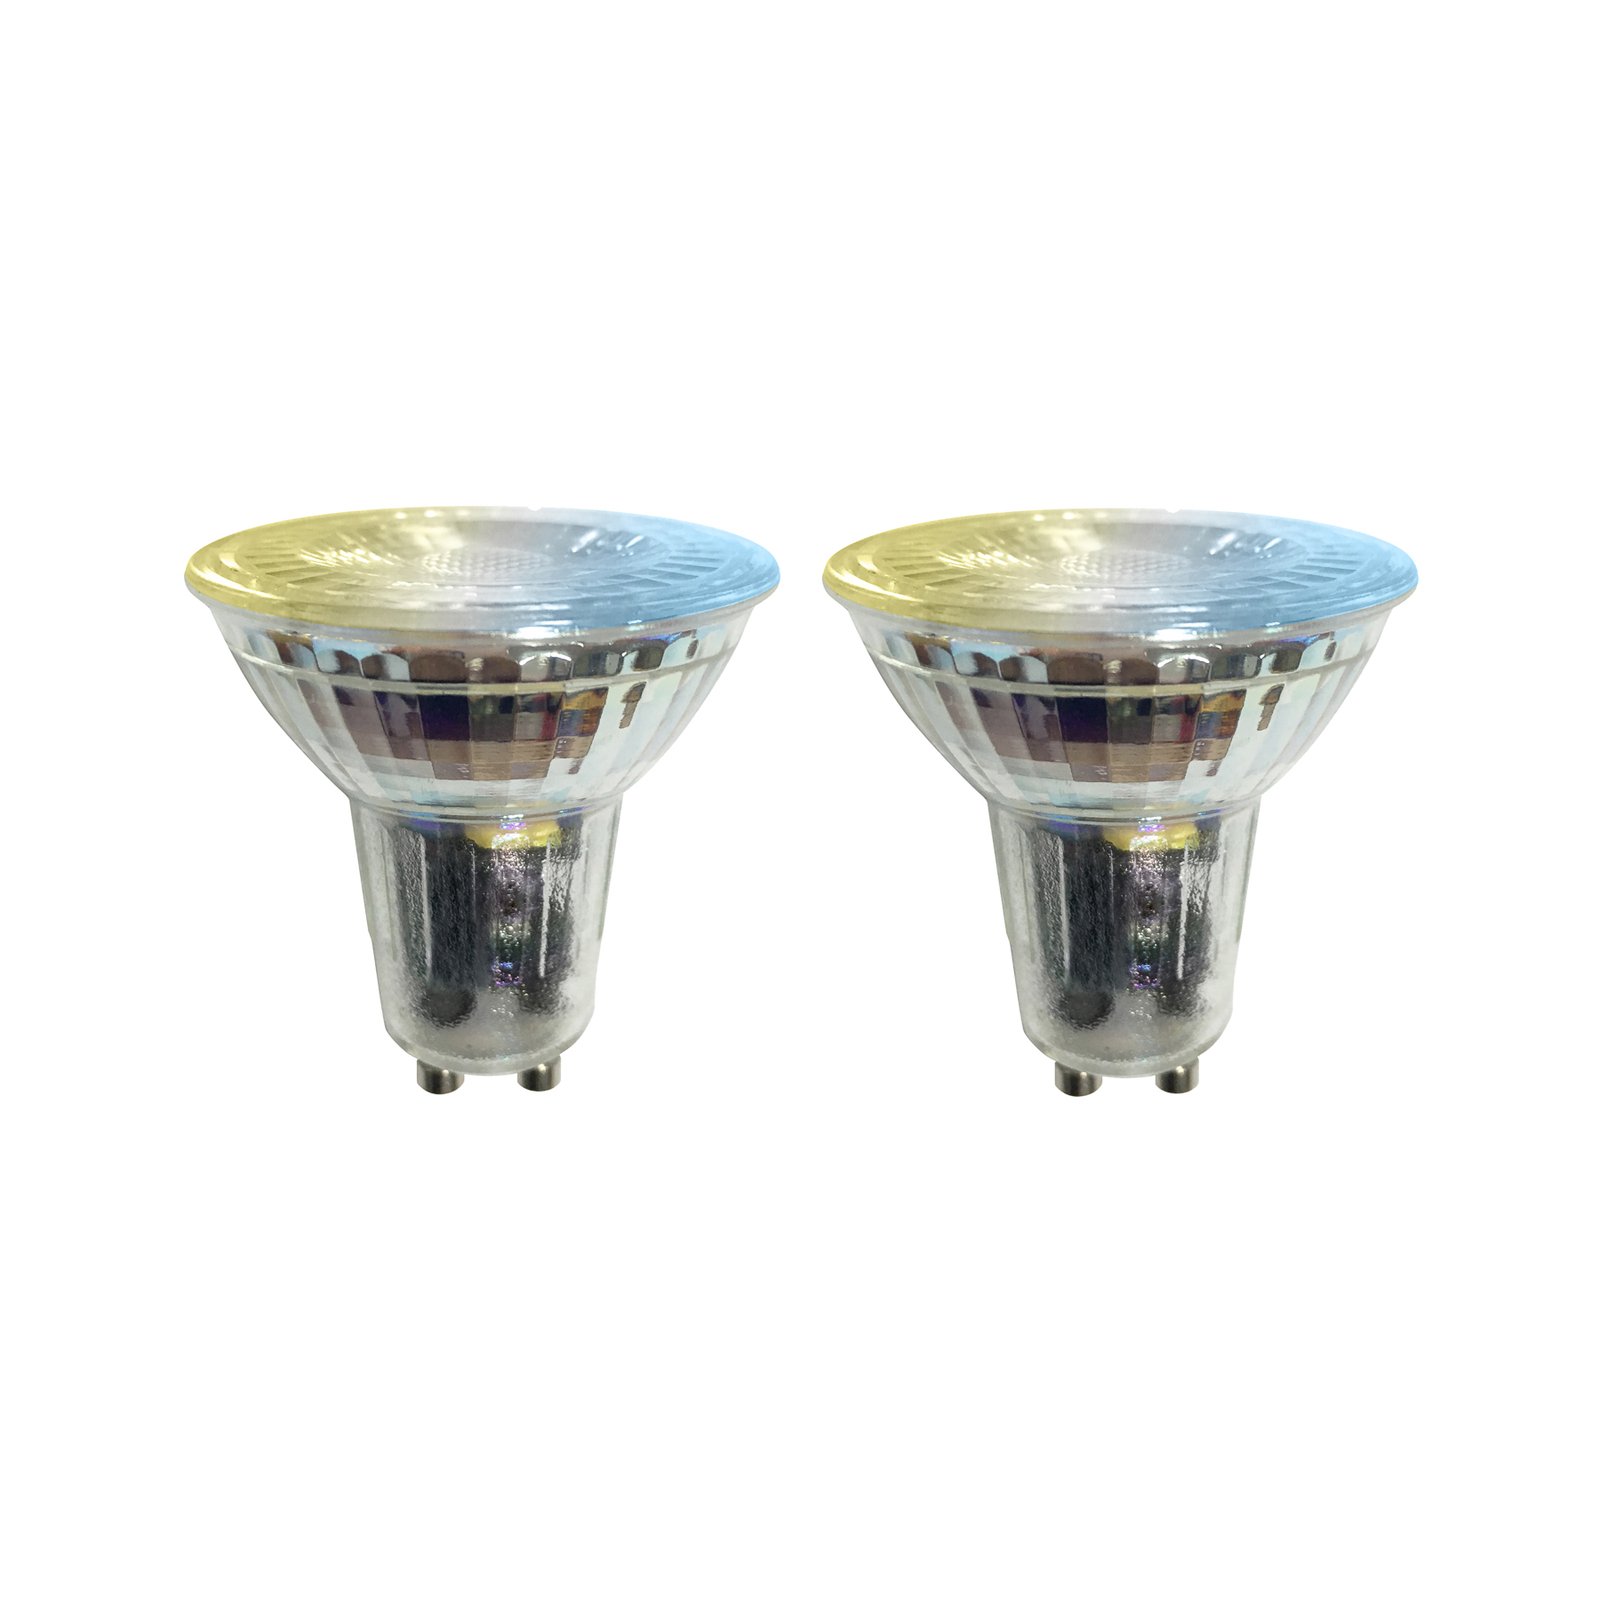 Prios LED-GU10-pære glas 4,7W WLAN klar, 2 stk